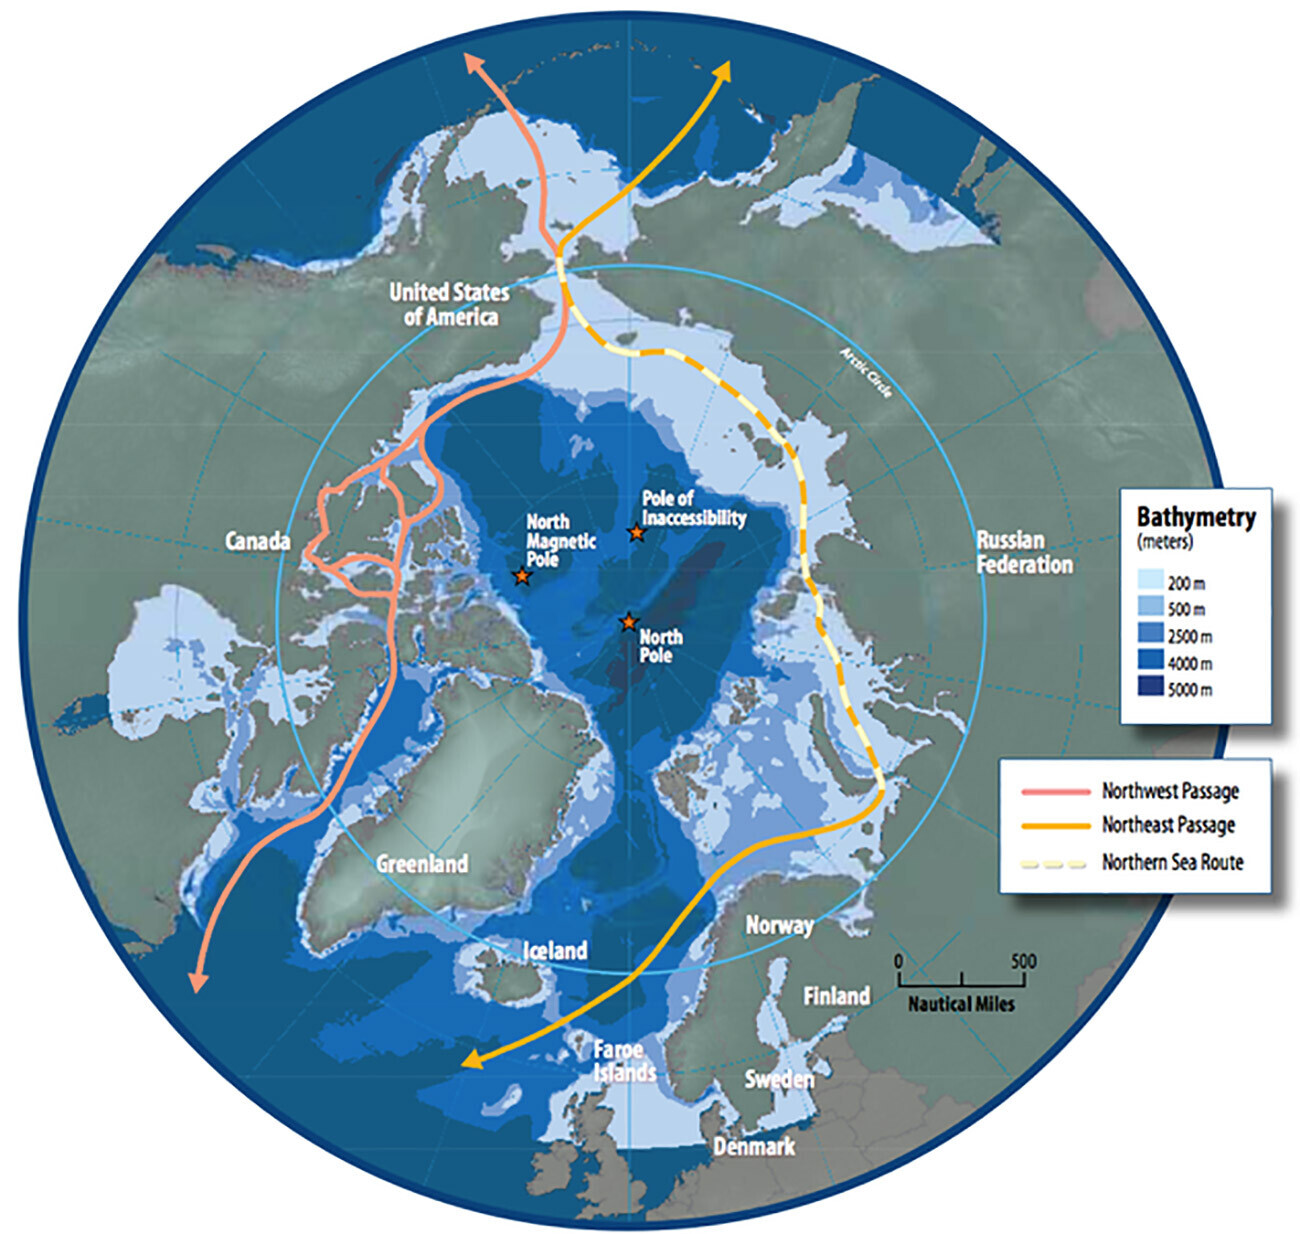 Zemljevid arktične regije, ki prikazuje plovne poti Severovzhodnega prehoda, Severne morske poti in Severozahodnega prehoda.
